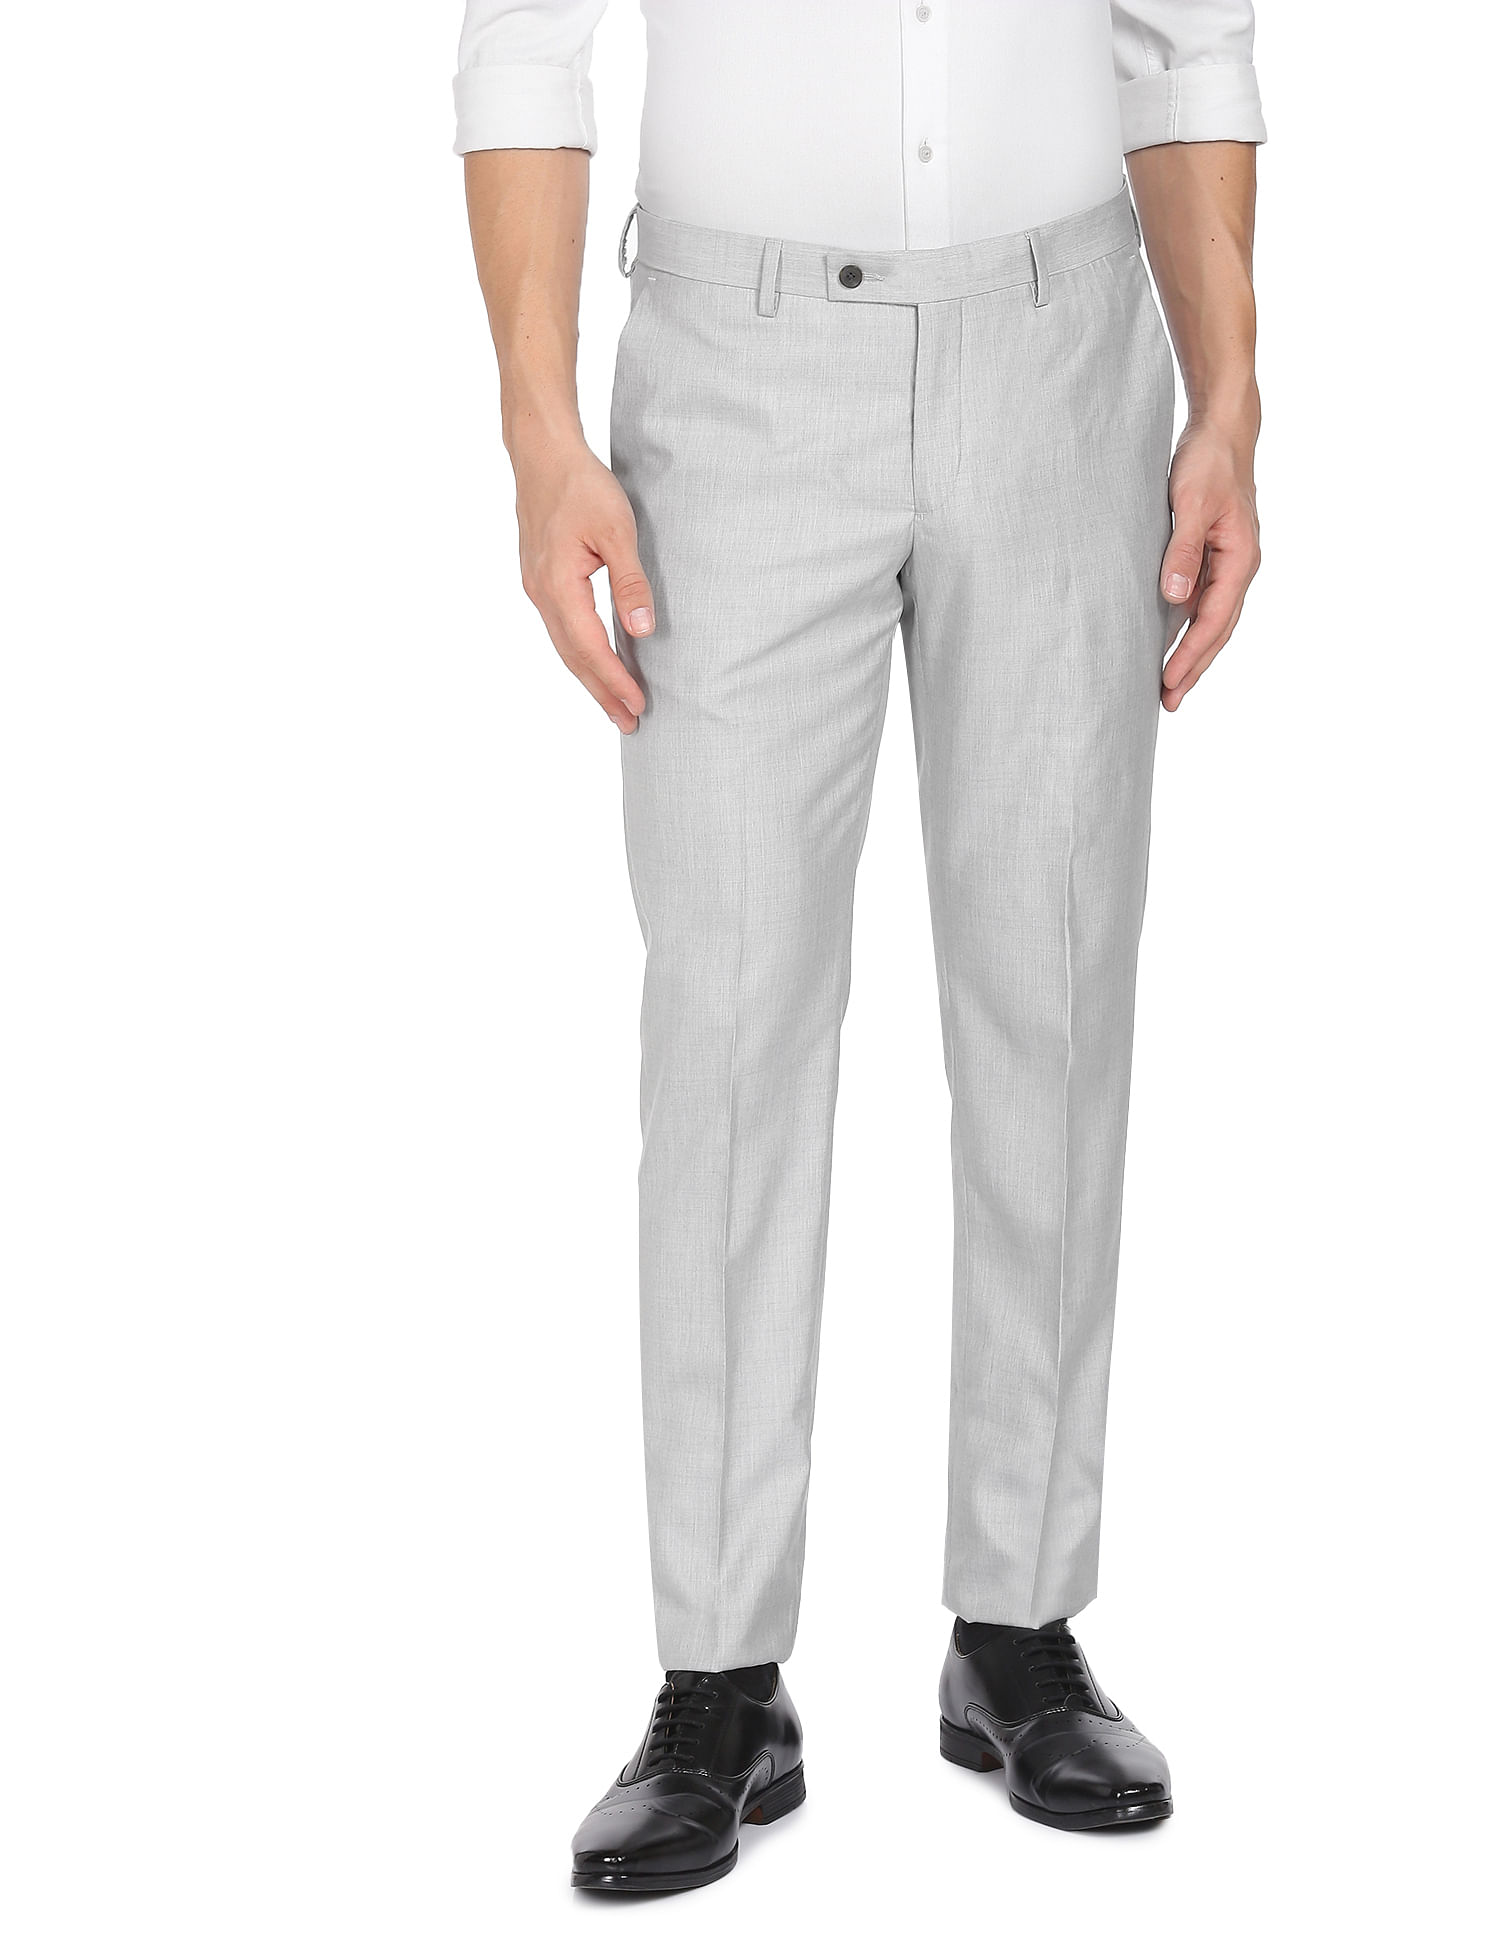 Light Grey Colour Cotton Pants For Men – Prime Porter